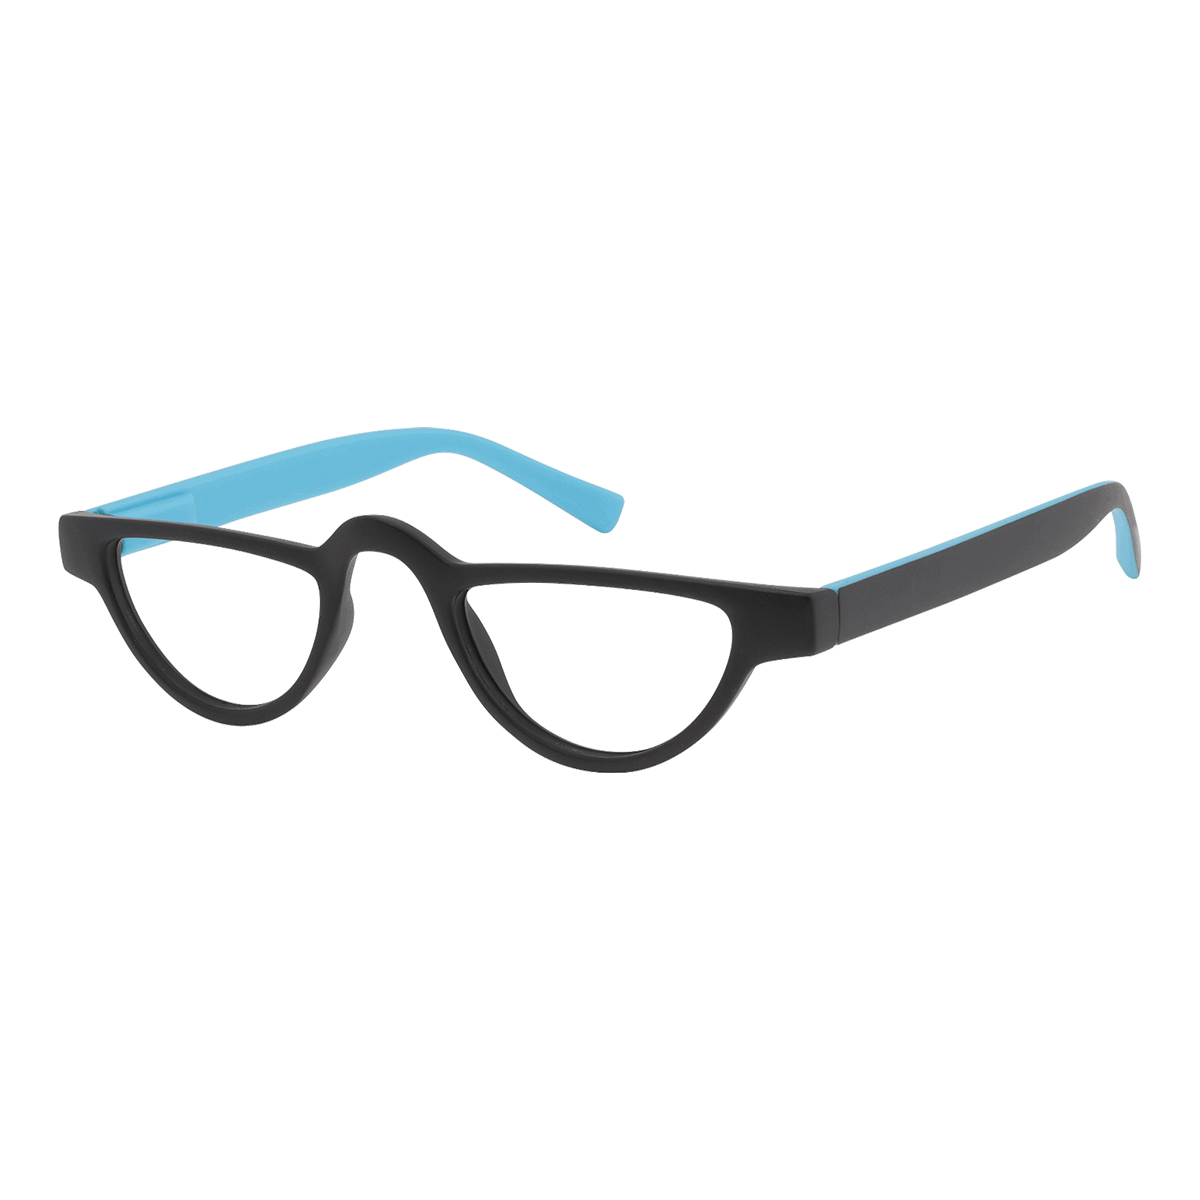 Ocytus - Geometric Black-Blue Reading Glasses for Men & Women